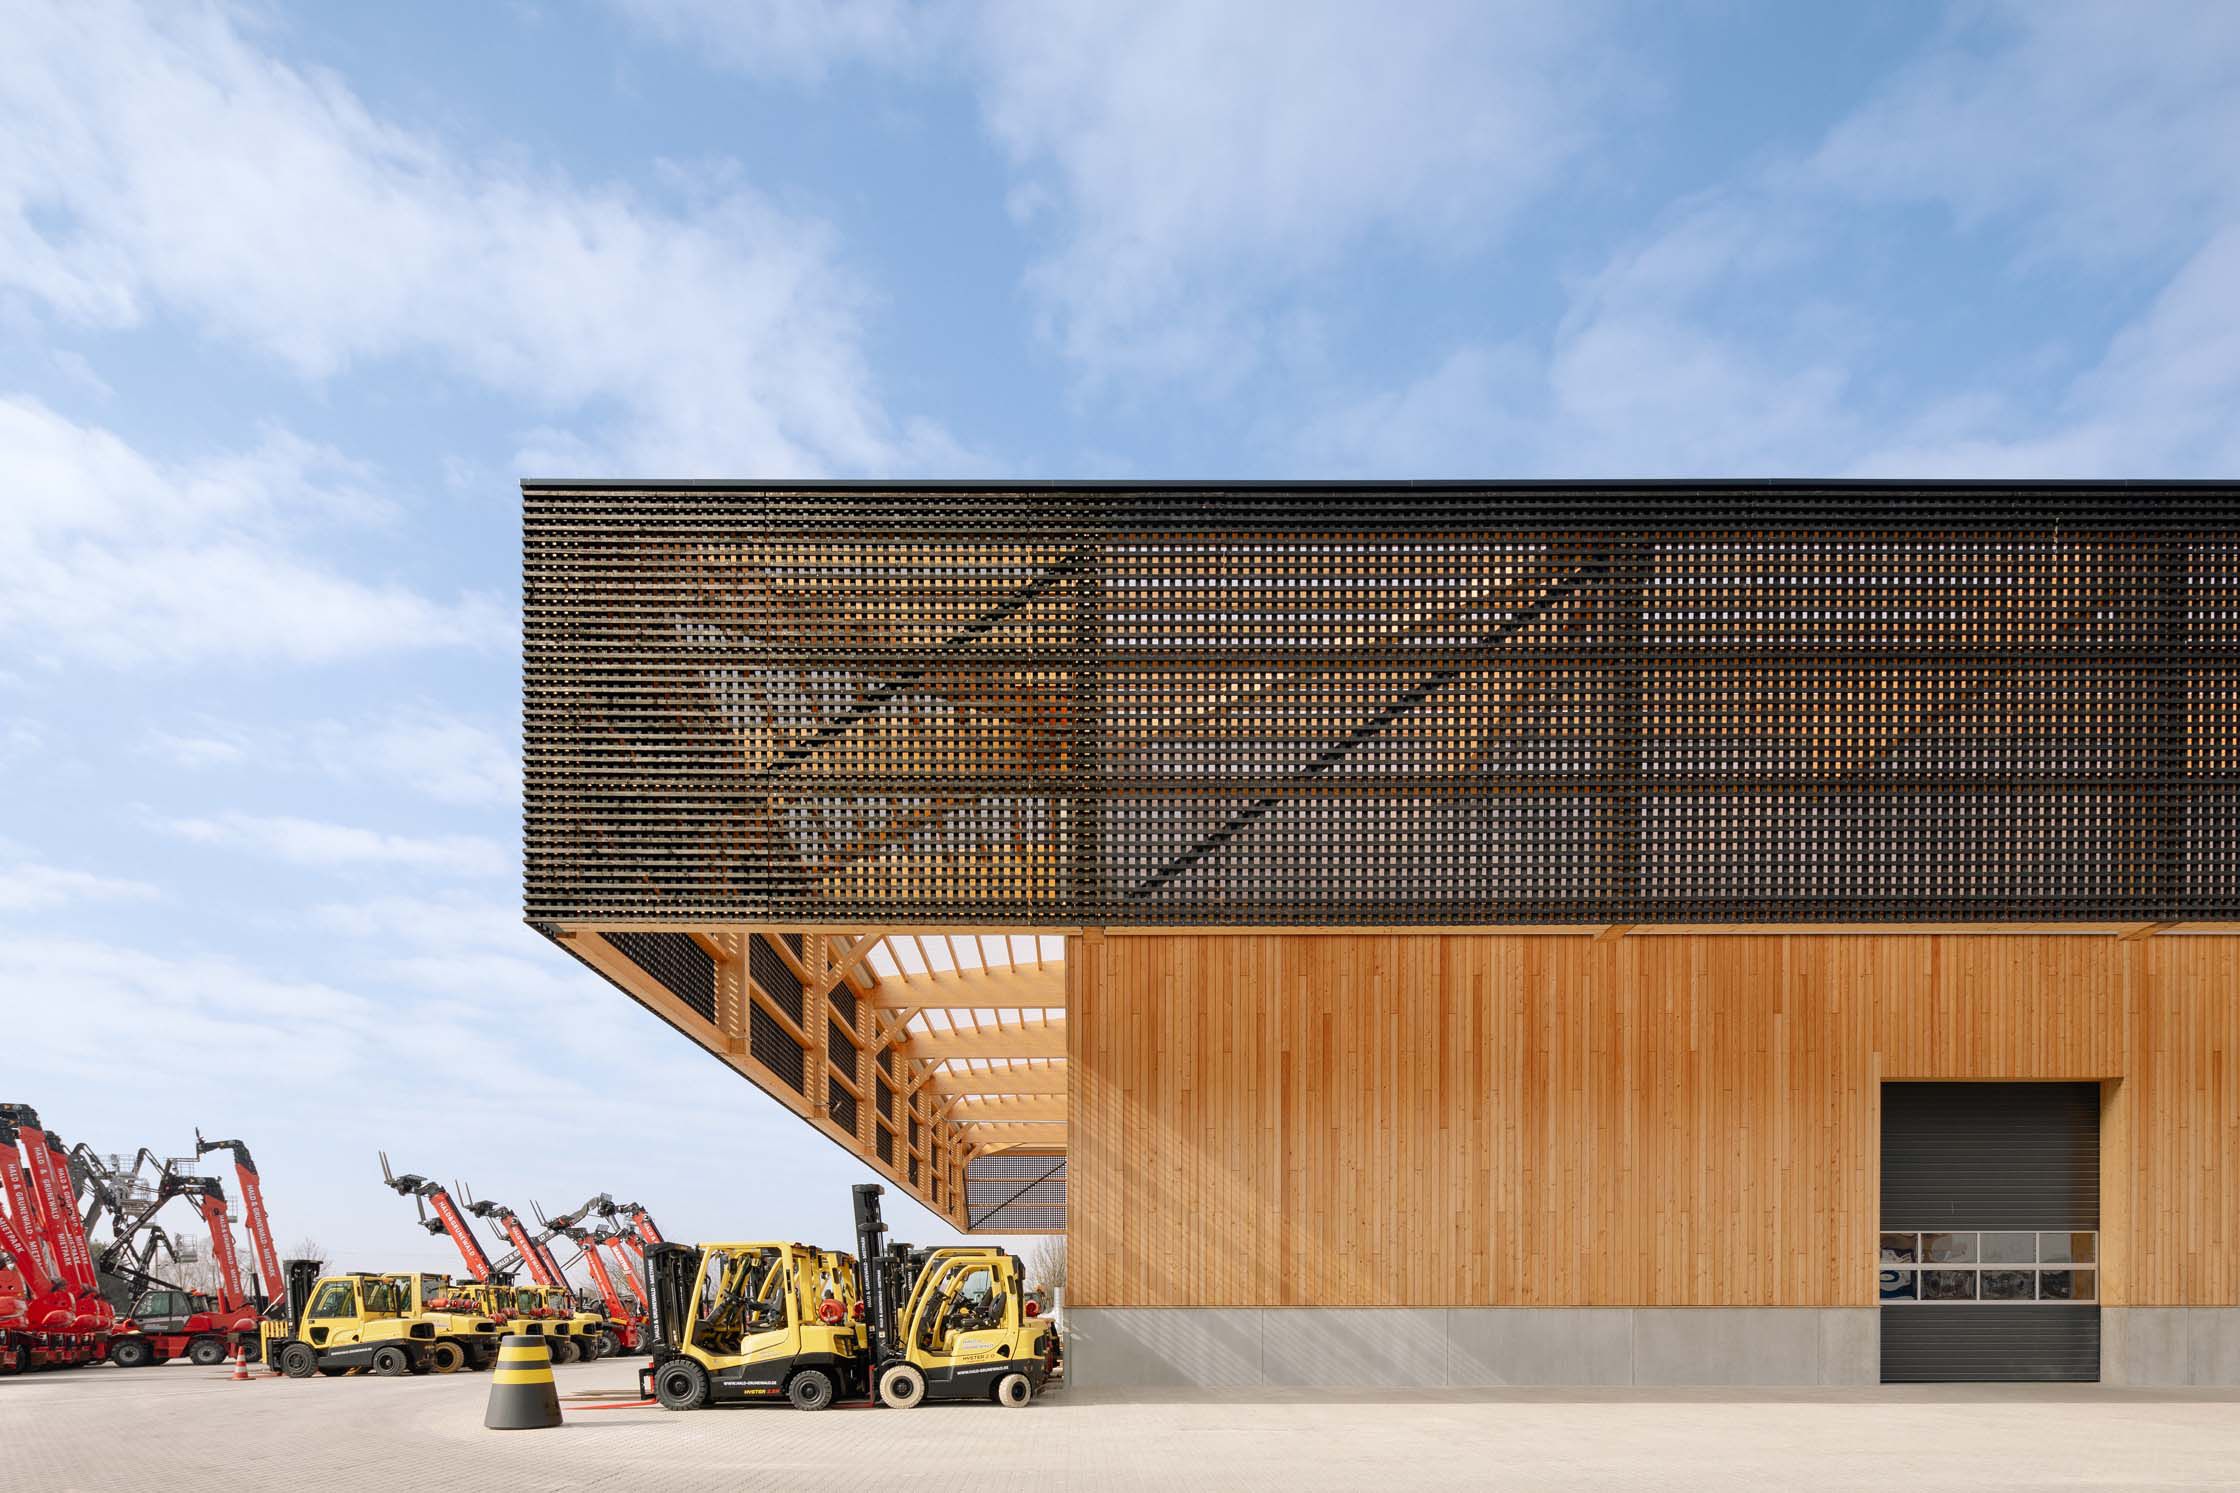 Firmenzentrale und Betriebsstätte in Holzbauweise: Der “Holzhut” von rundzwei Architekten